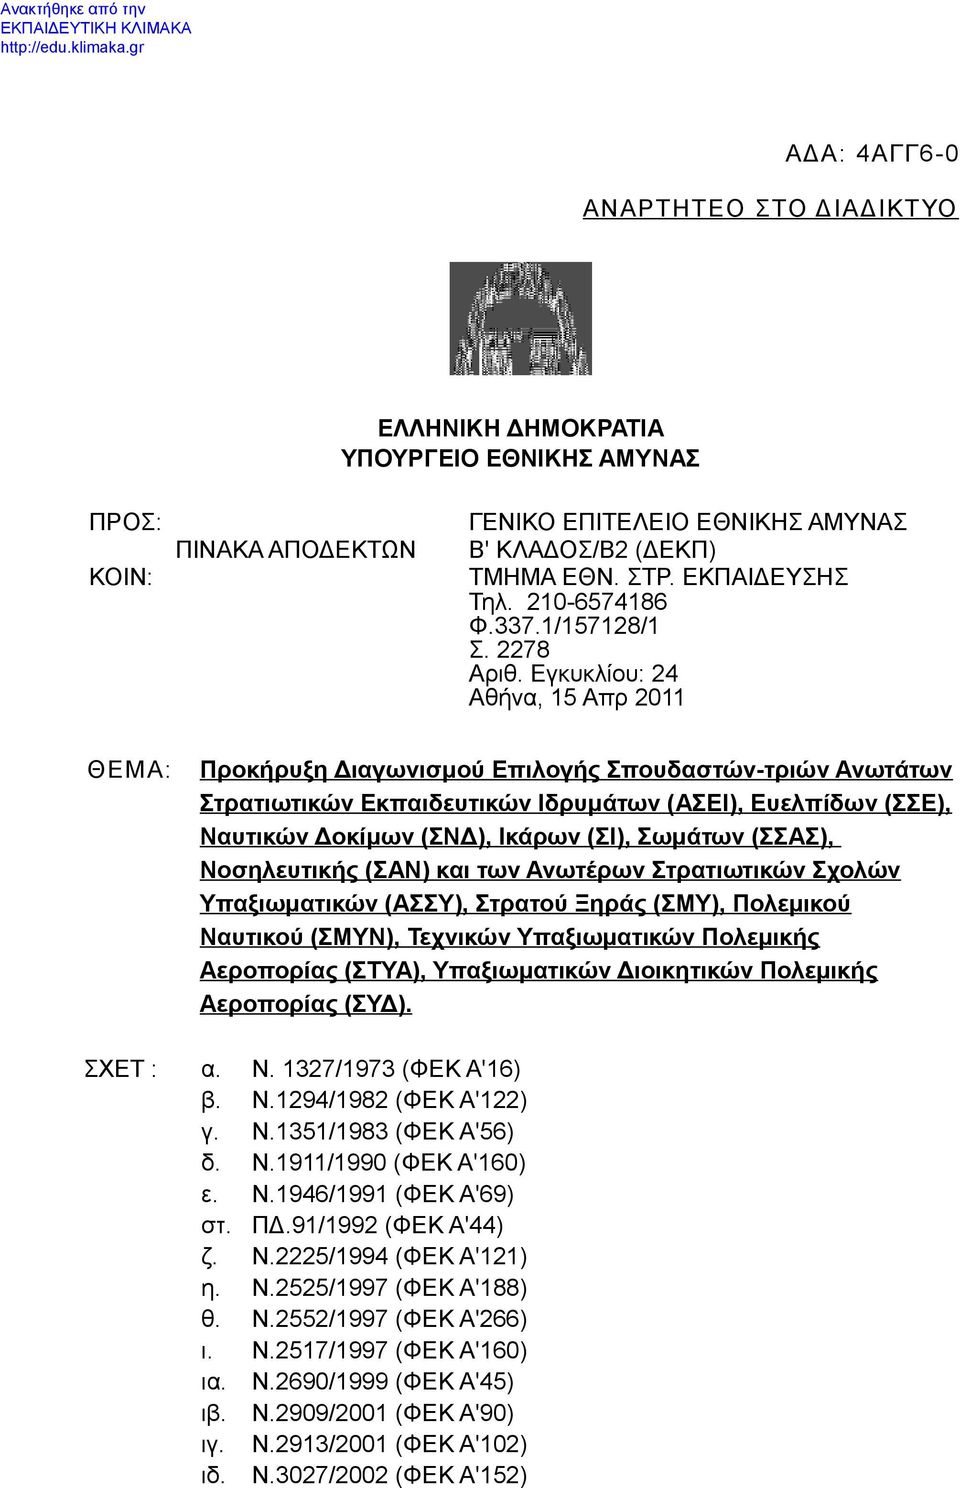 Εγκυκλίου: 24 Αθήνα, 15 Απρ 2011 ΘΕΜΑ: Προκήρυξη Διαγωνισμού Επιλογής Σπουδαστών-τριών Ανωτάτων Στρατιωτικών Εκπαιδευτικών Ιδρυμάτων (ΑΣΕΙ), Ευελπίδων (ΣΣΕ), Ναυτικών Δοκίμων (ΣΝΔ), Ικάρων (ΣΙ),